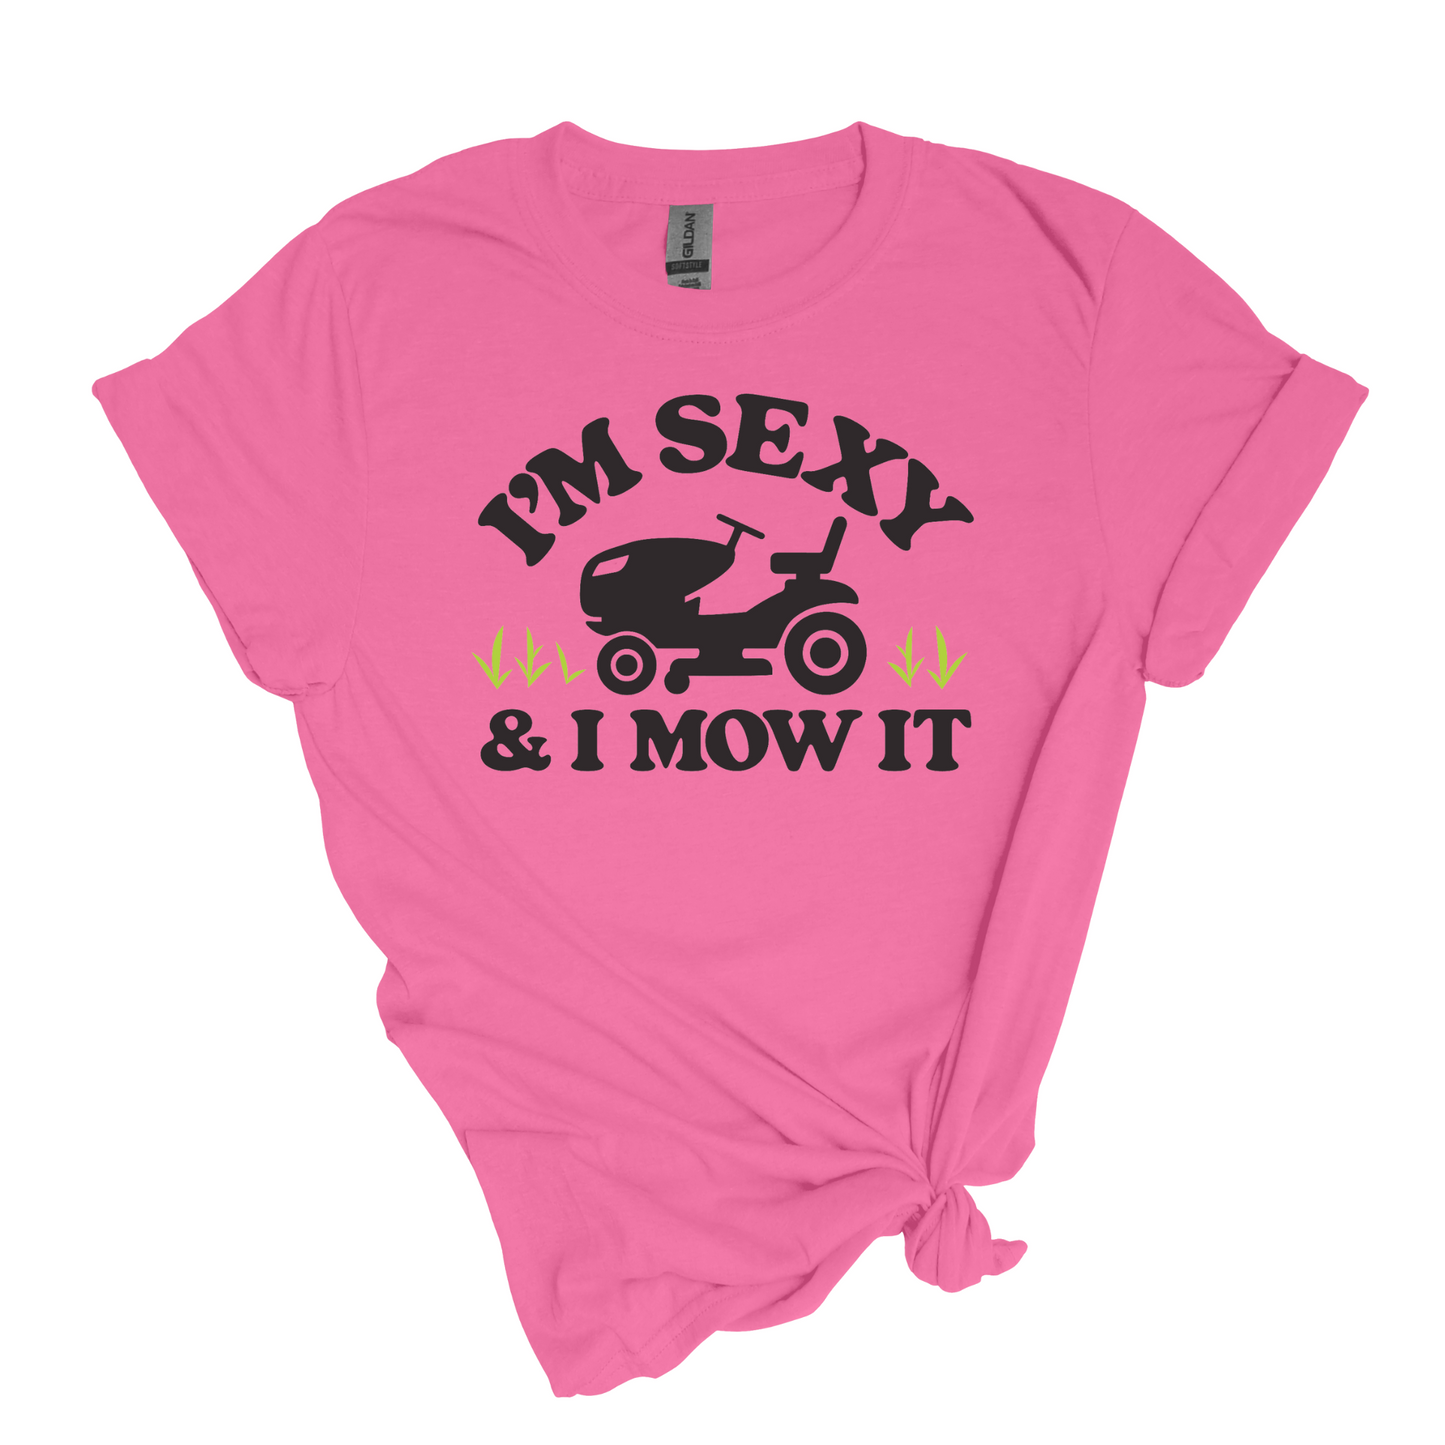 Soy sexy y lo corto - Camiseta suave unisex para adultos 